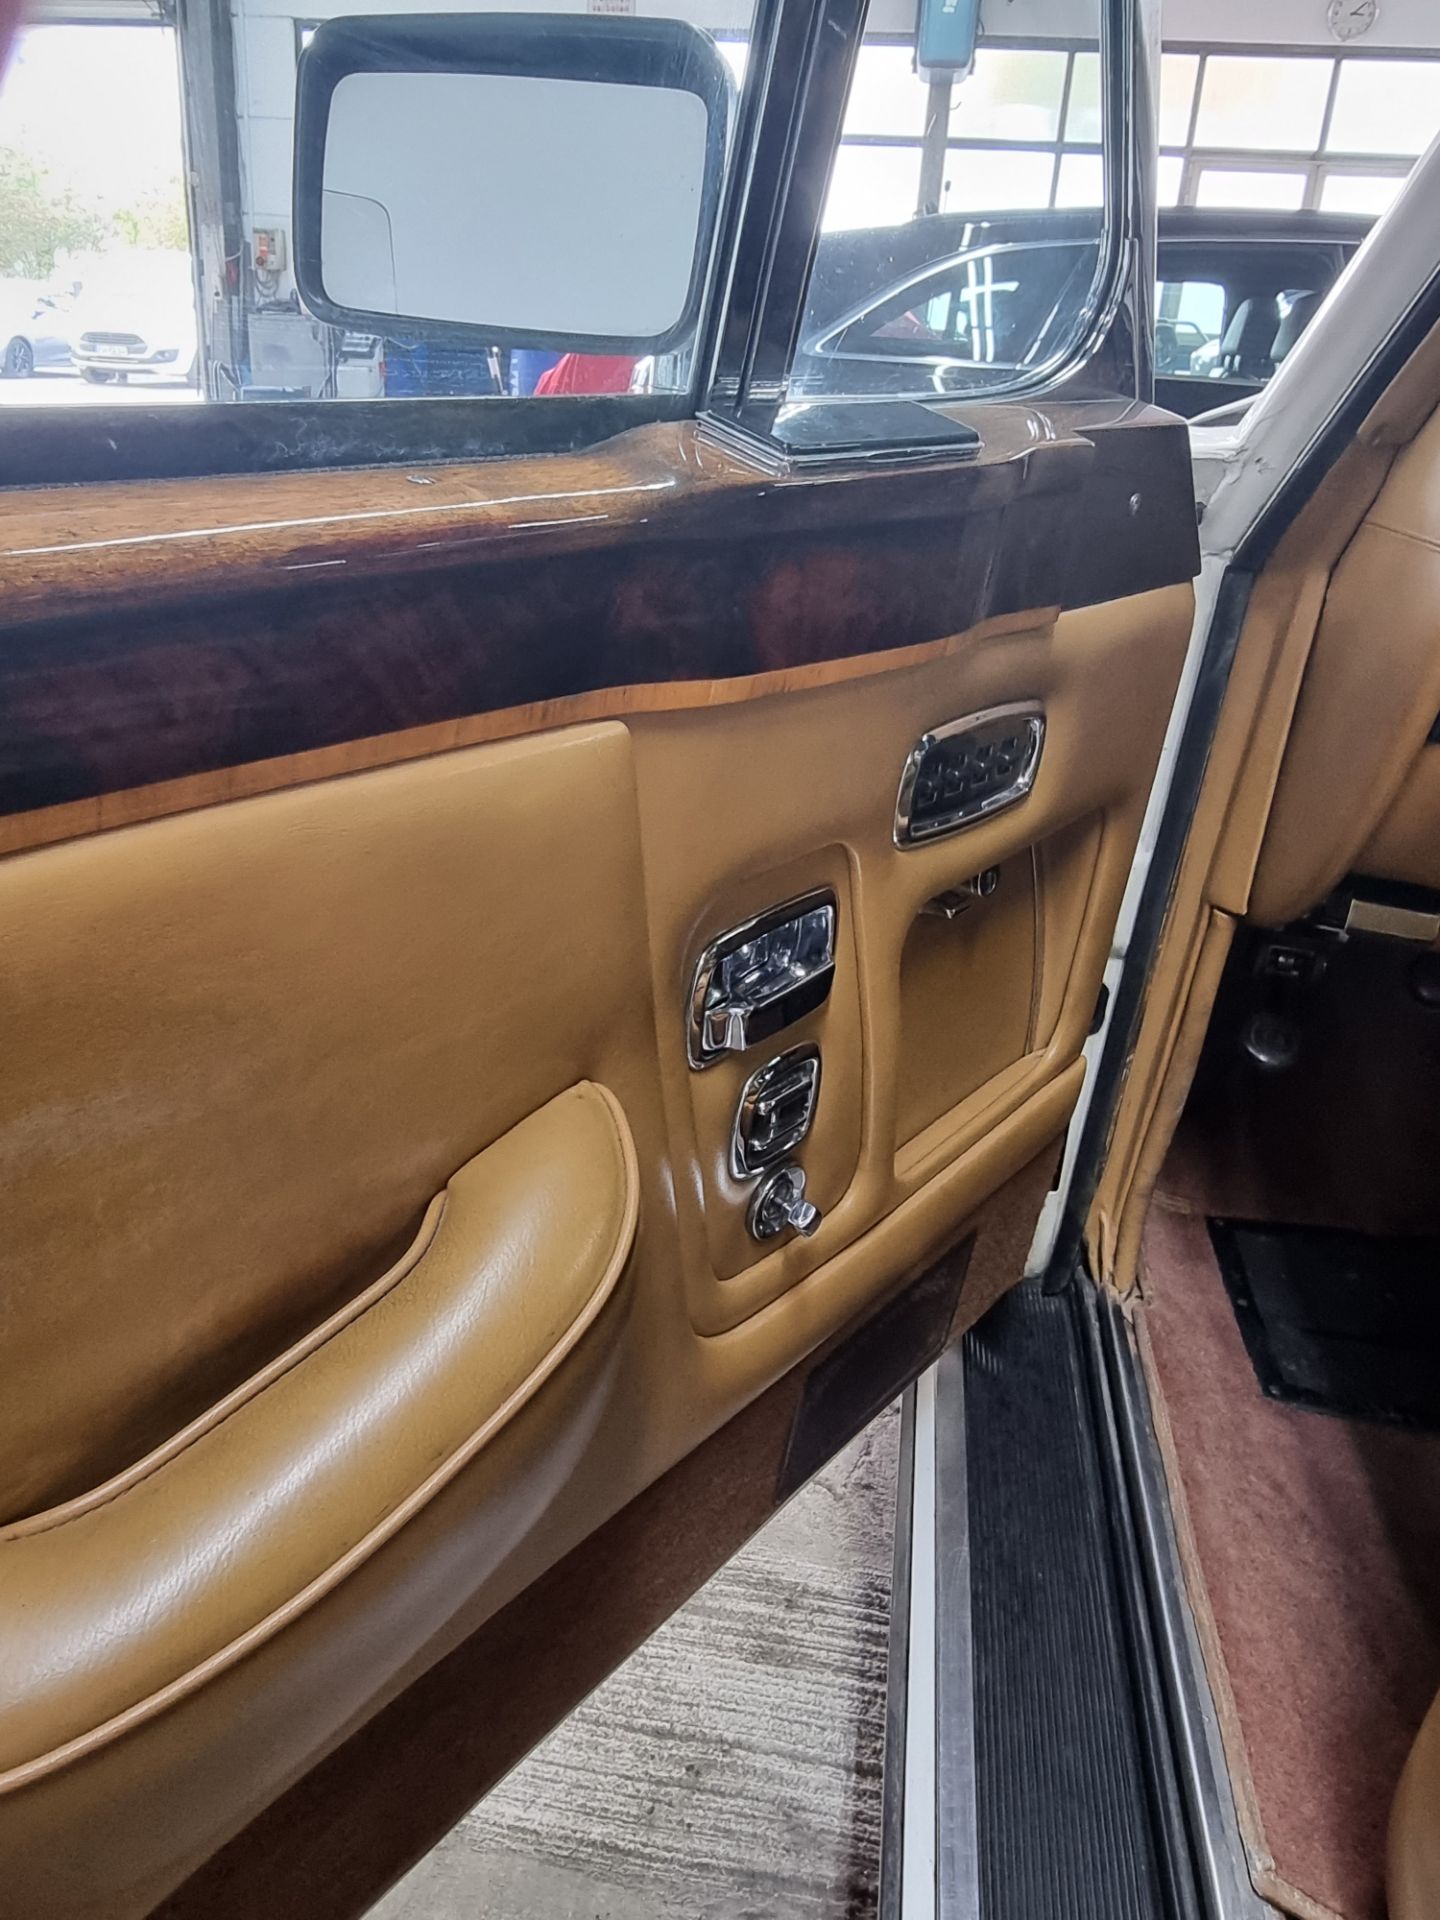 PKW Rolls-Royce (GB) Corniche Cabrio mit Faltverdeck - Bild 5 aus 8